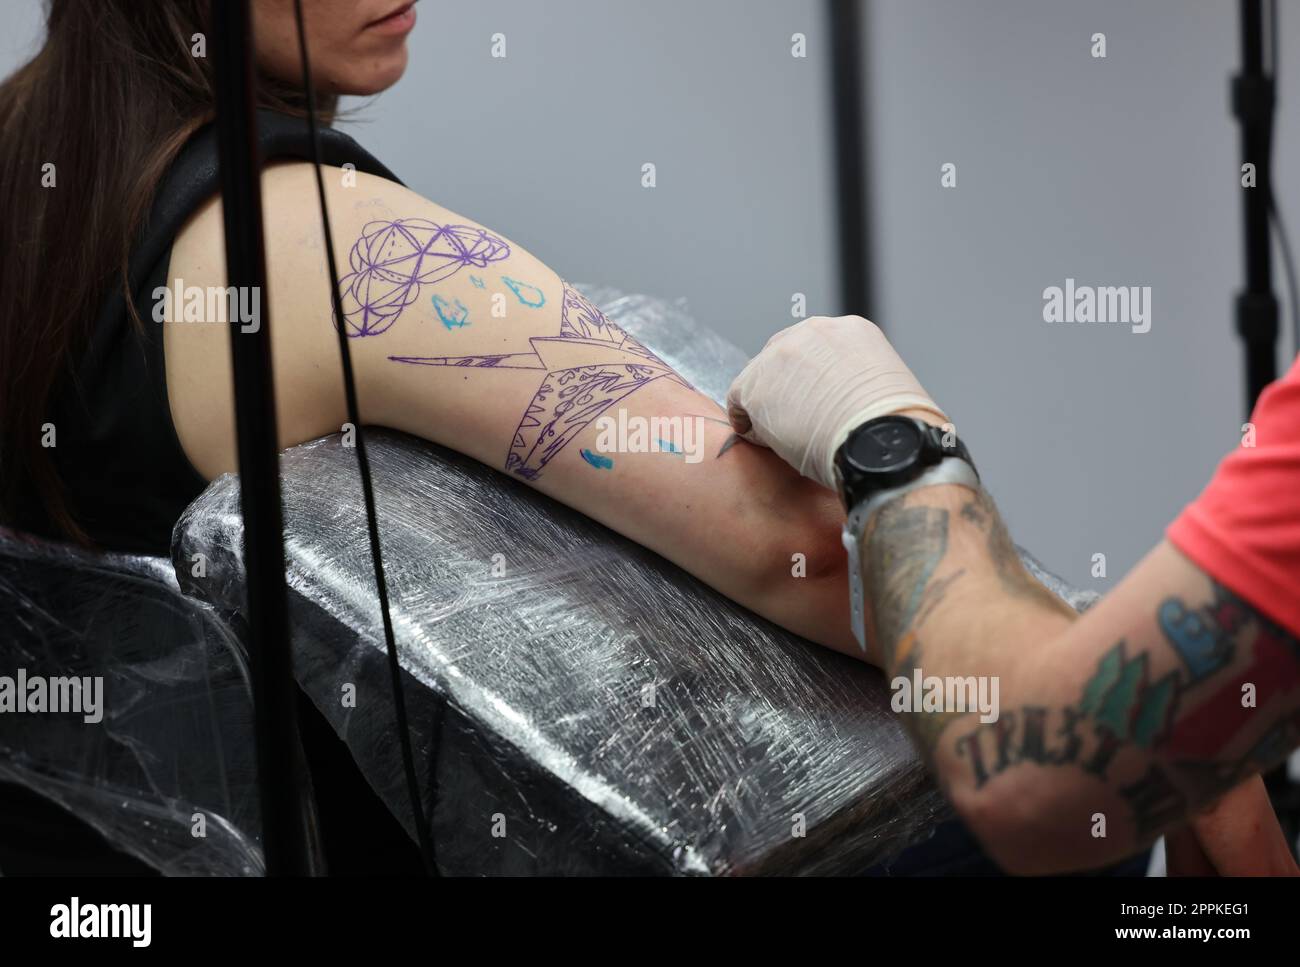 Nicht identifizierter Teilnehmer bei der 15. Tattoofest Convention in Krakau. Tattoo-Künstler bei der Arbeit. Stockfoto